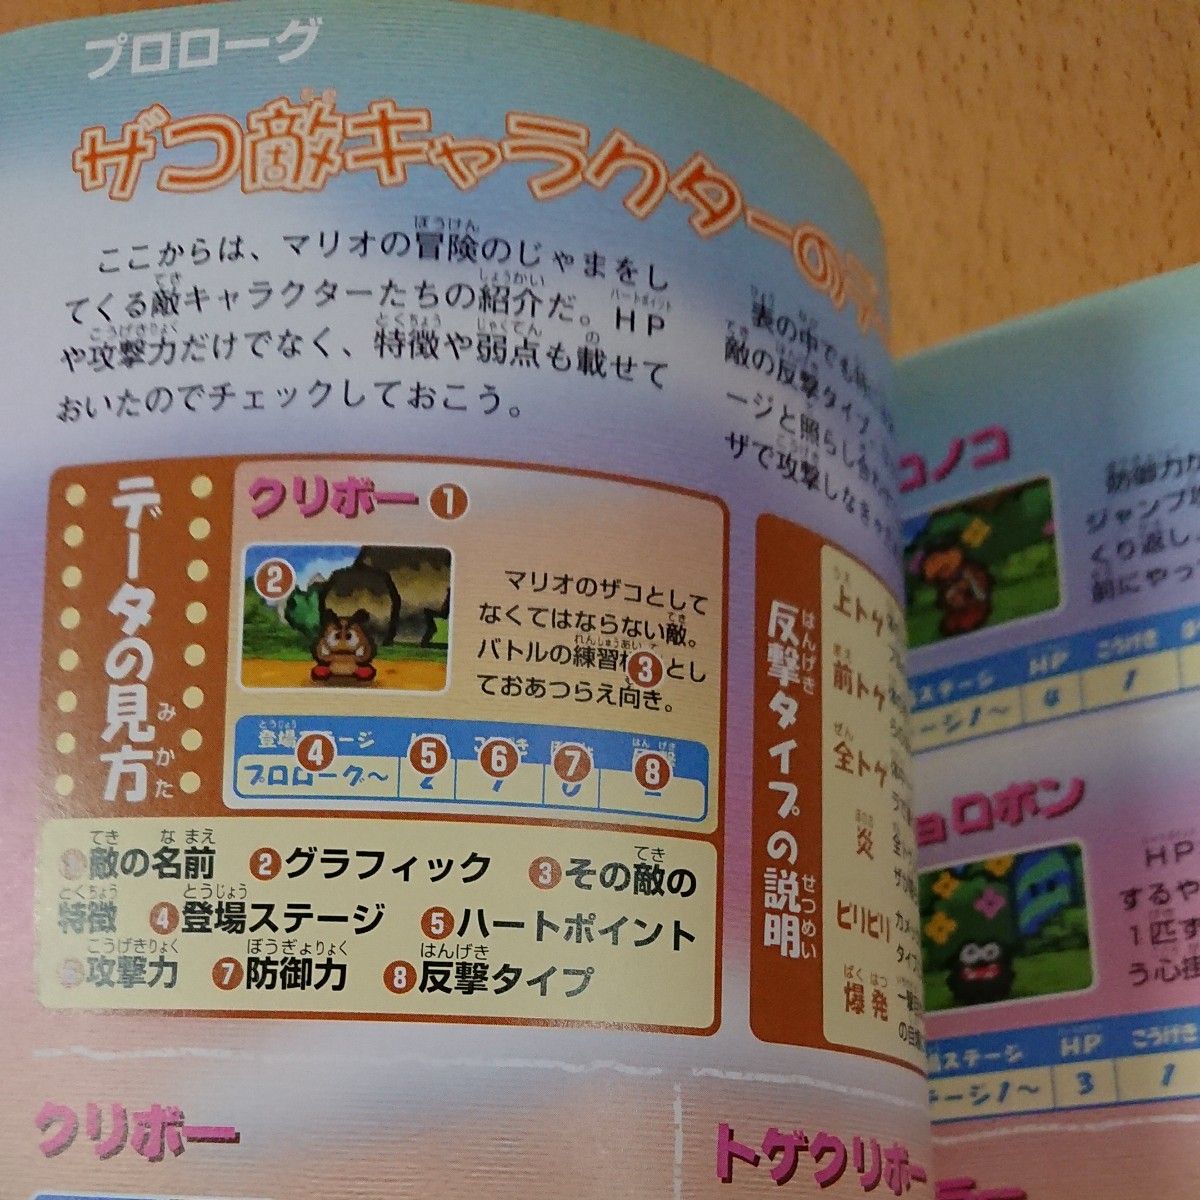 【N64ゲーム攻略本】マリオストーリー 攻略ガイドブック  /  ニンテンドー64